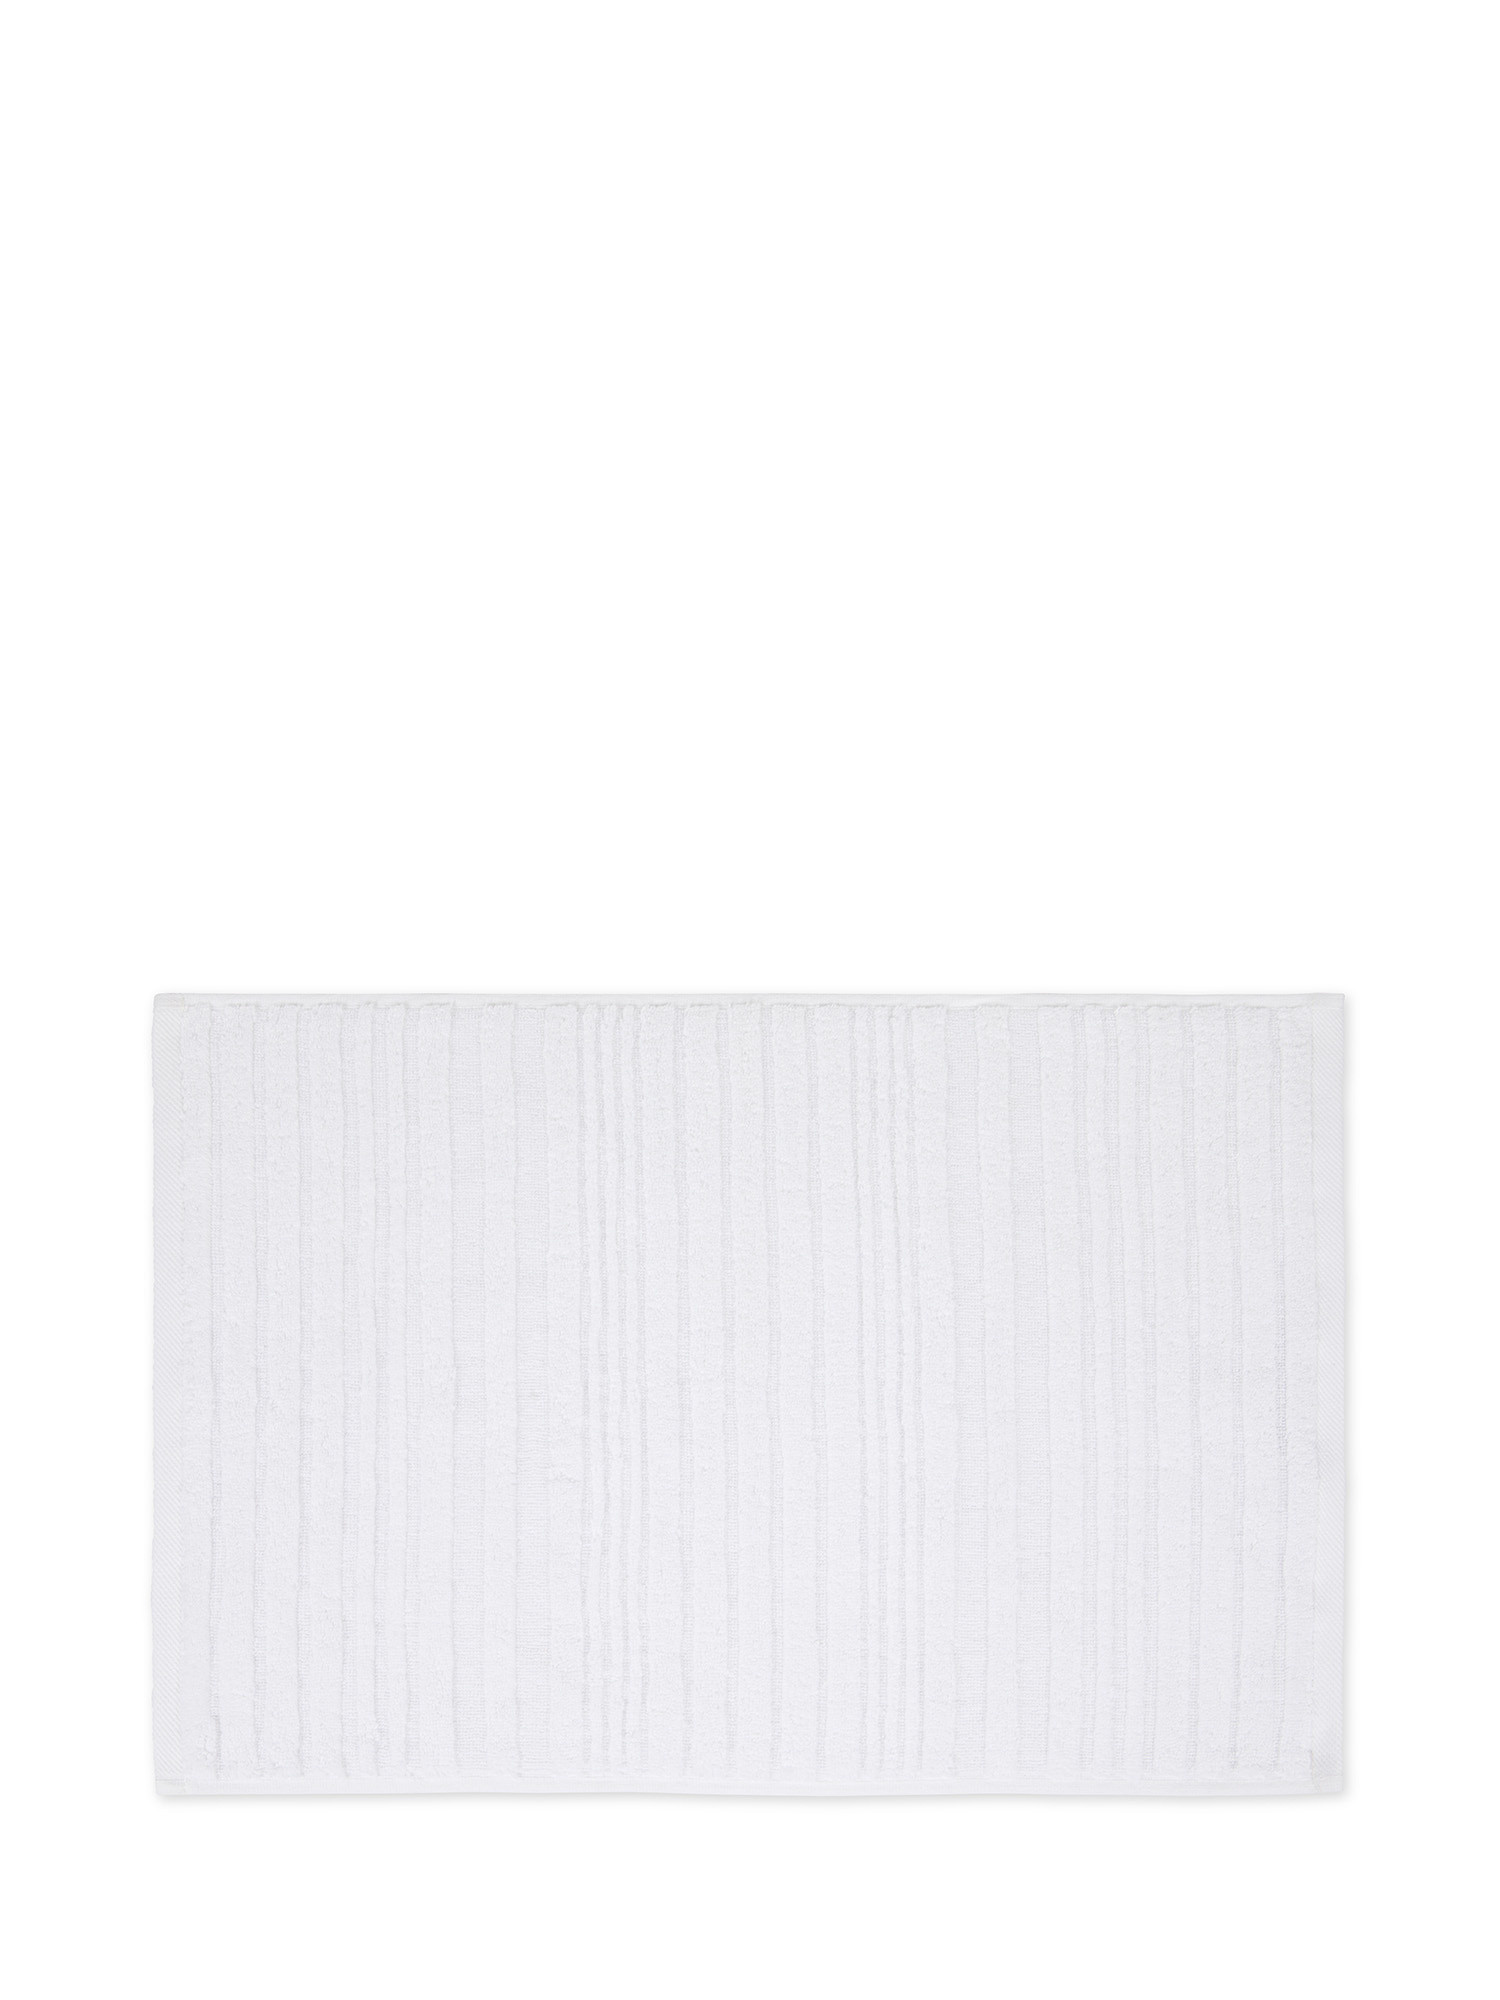 Asciugamano in spugna di cotone con righe a rilievo, Bianco, large image number 1